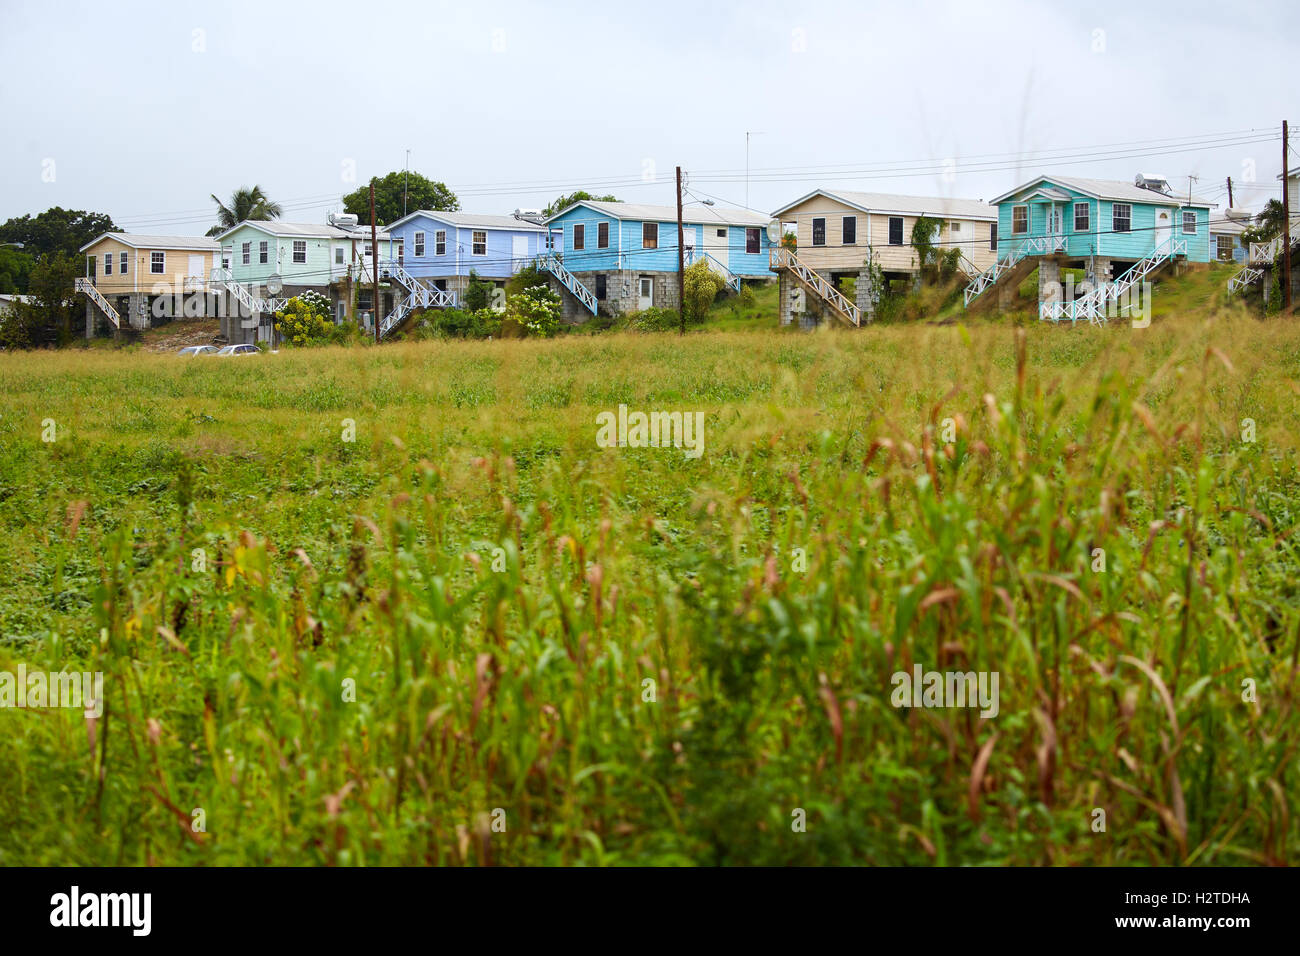 Case di Barbados baracche di colore luminoso tipico paesino a nord dell'isola shack copyspace case tradizionali del paesaggio ch Foto Stock